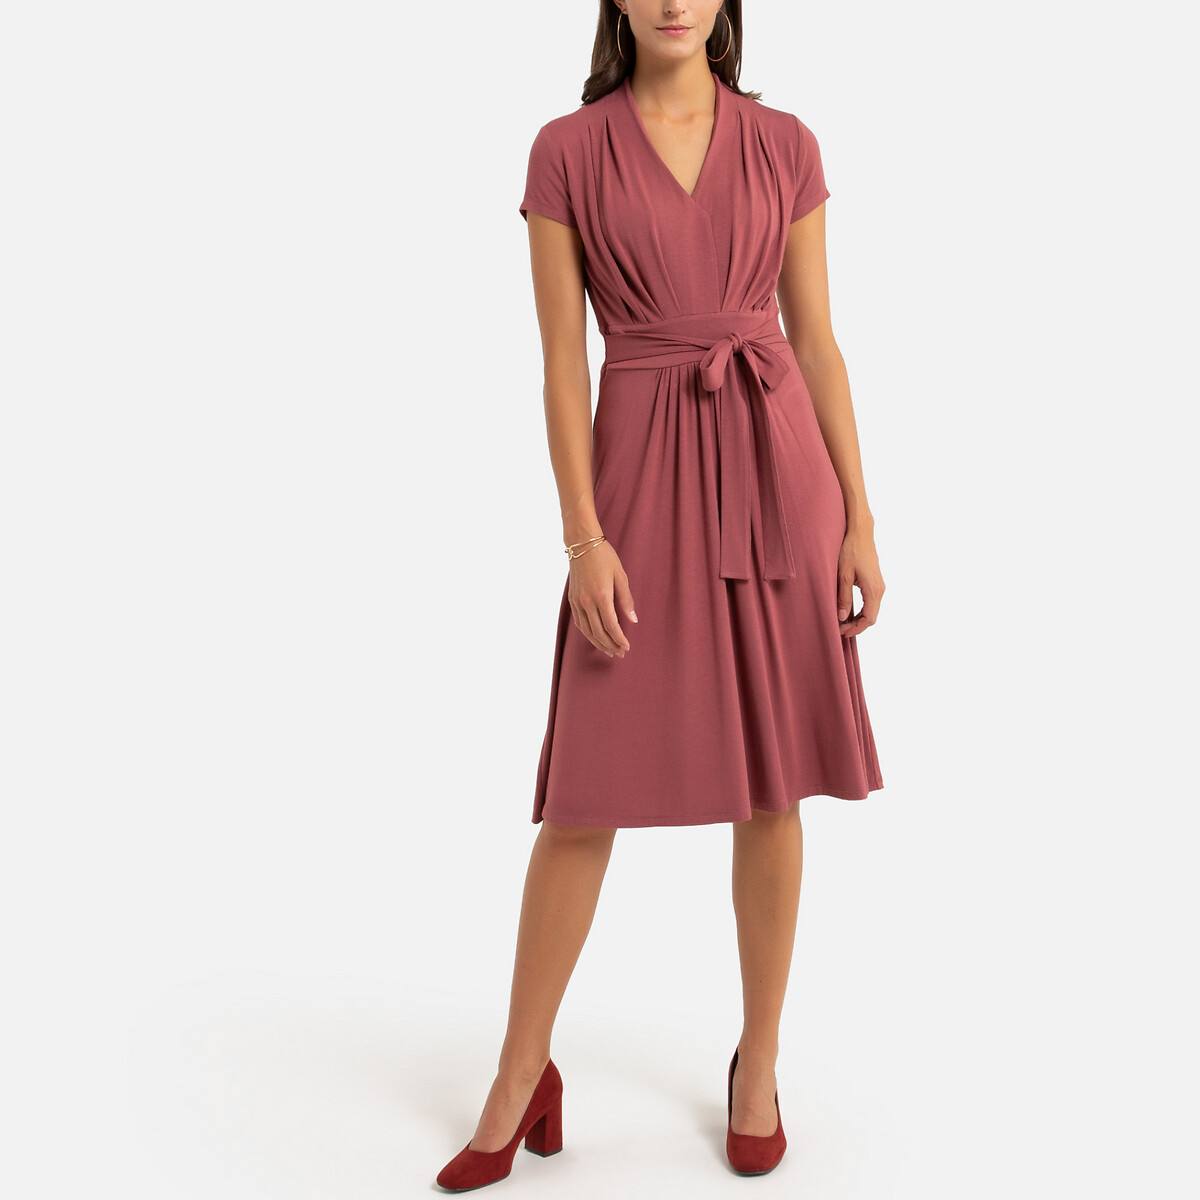 Платье La Redoute Расклешенное 52 (FR) - 58 (RUS) розовый, размер 52 (FR) - 58 (RUS) Расклешенное 52 (FR) - 58 (RUS) розовый - фото 2